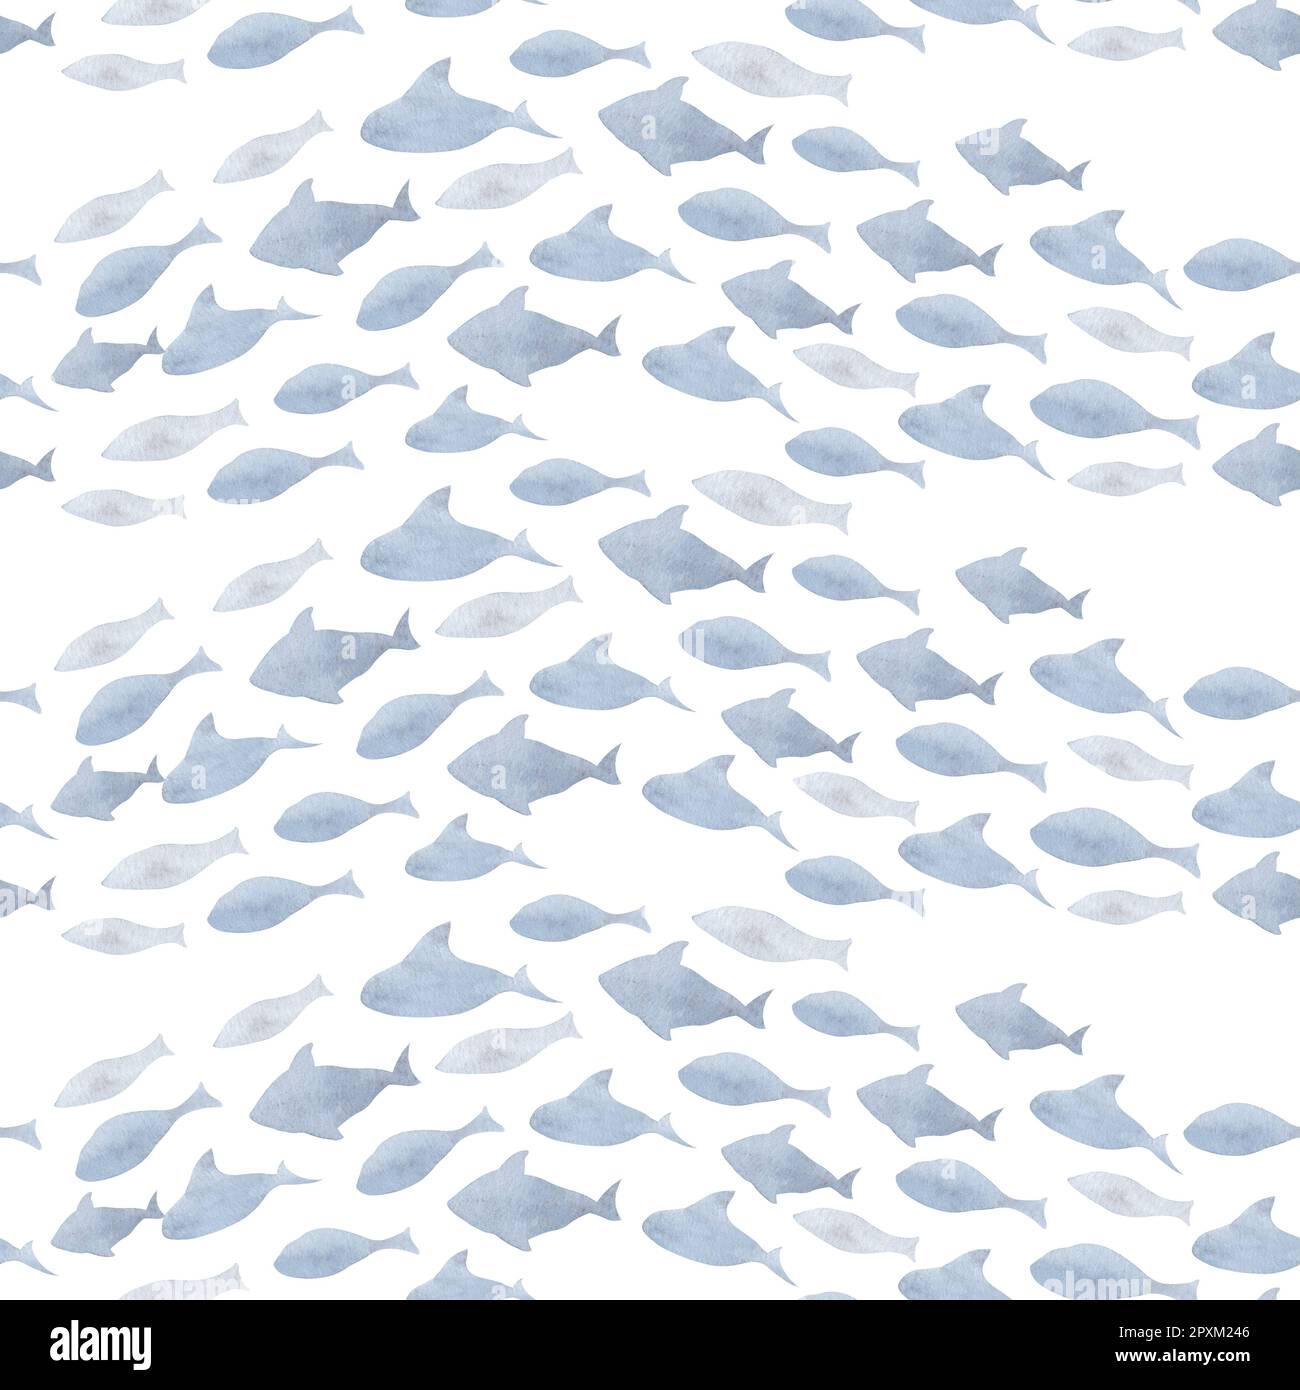 Seamless Pattern mit Fish Navy Shoal auf isoliertem weißem Hintergrund. Handgezogener, wasserfarbener Unterwasserhintergrund zum Einwickeln von Papier oder Marinetextilien. Verzierungen für jedes Design im nautischen Stil. Stockfoto